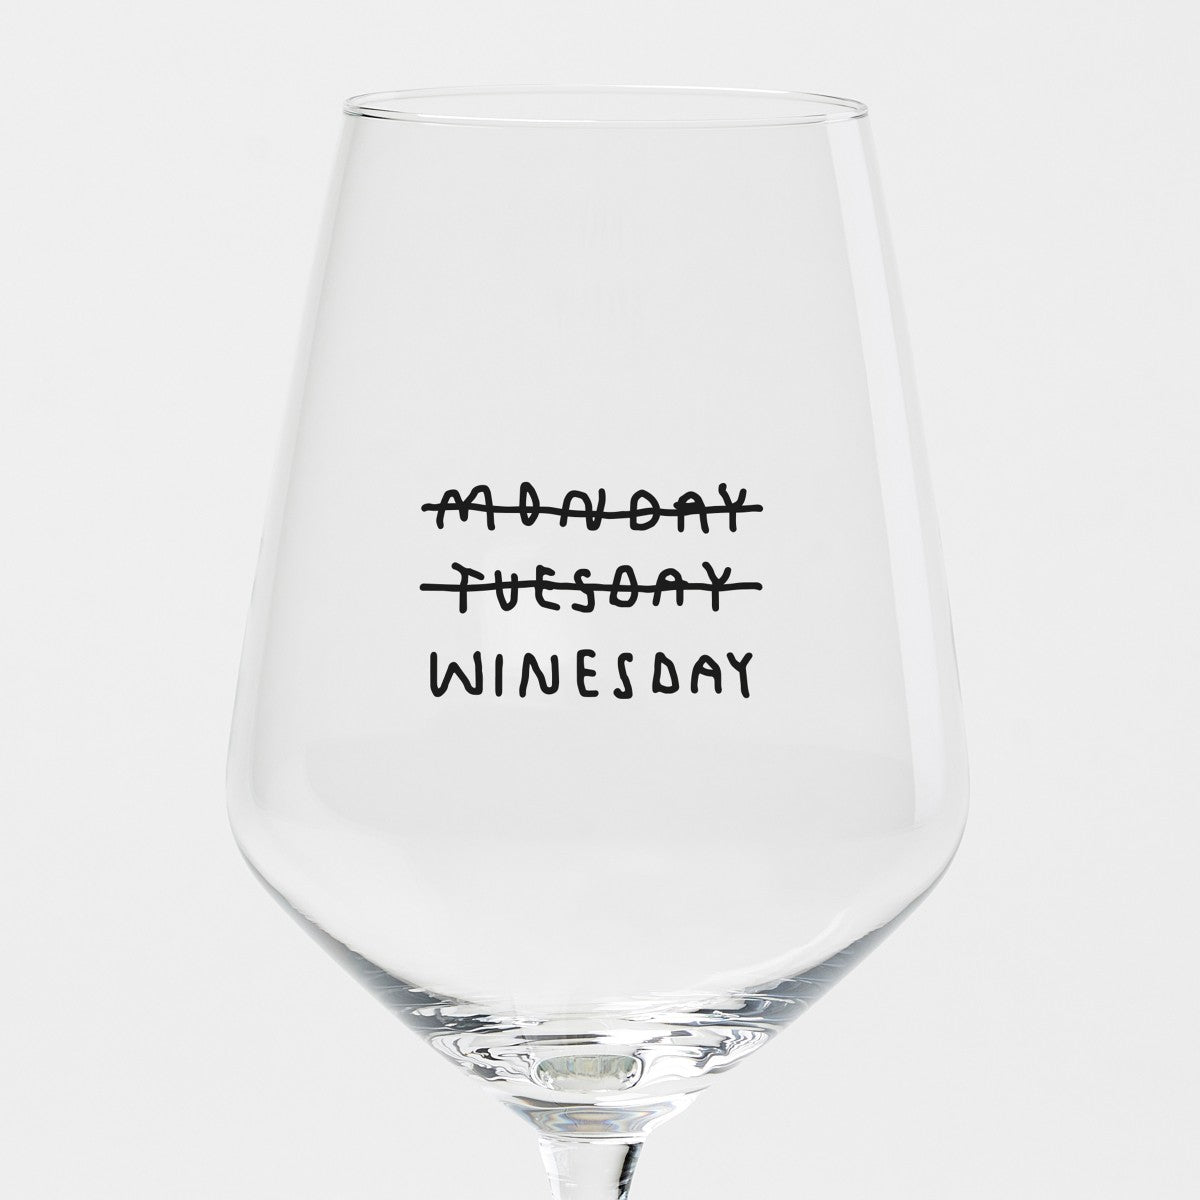 Wineglass - Monday Tuesday Winesday